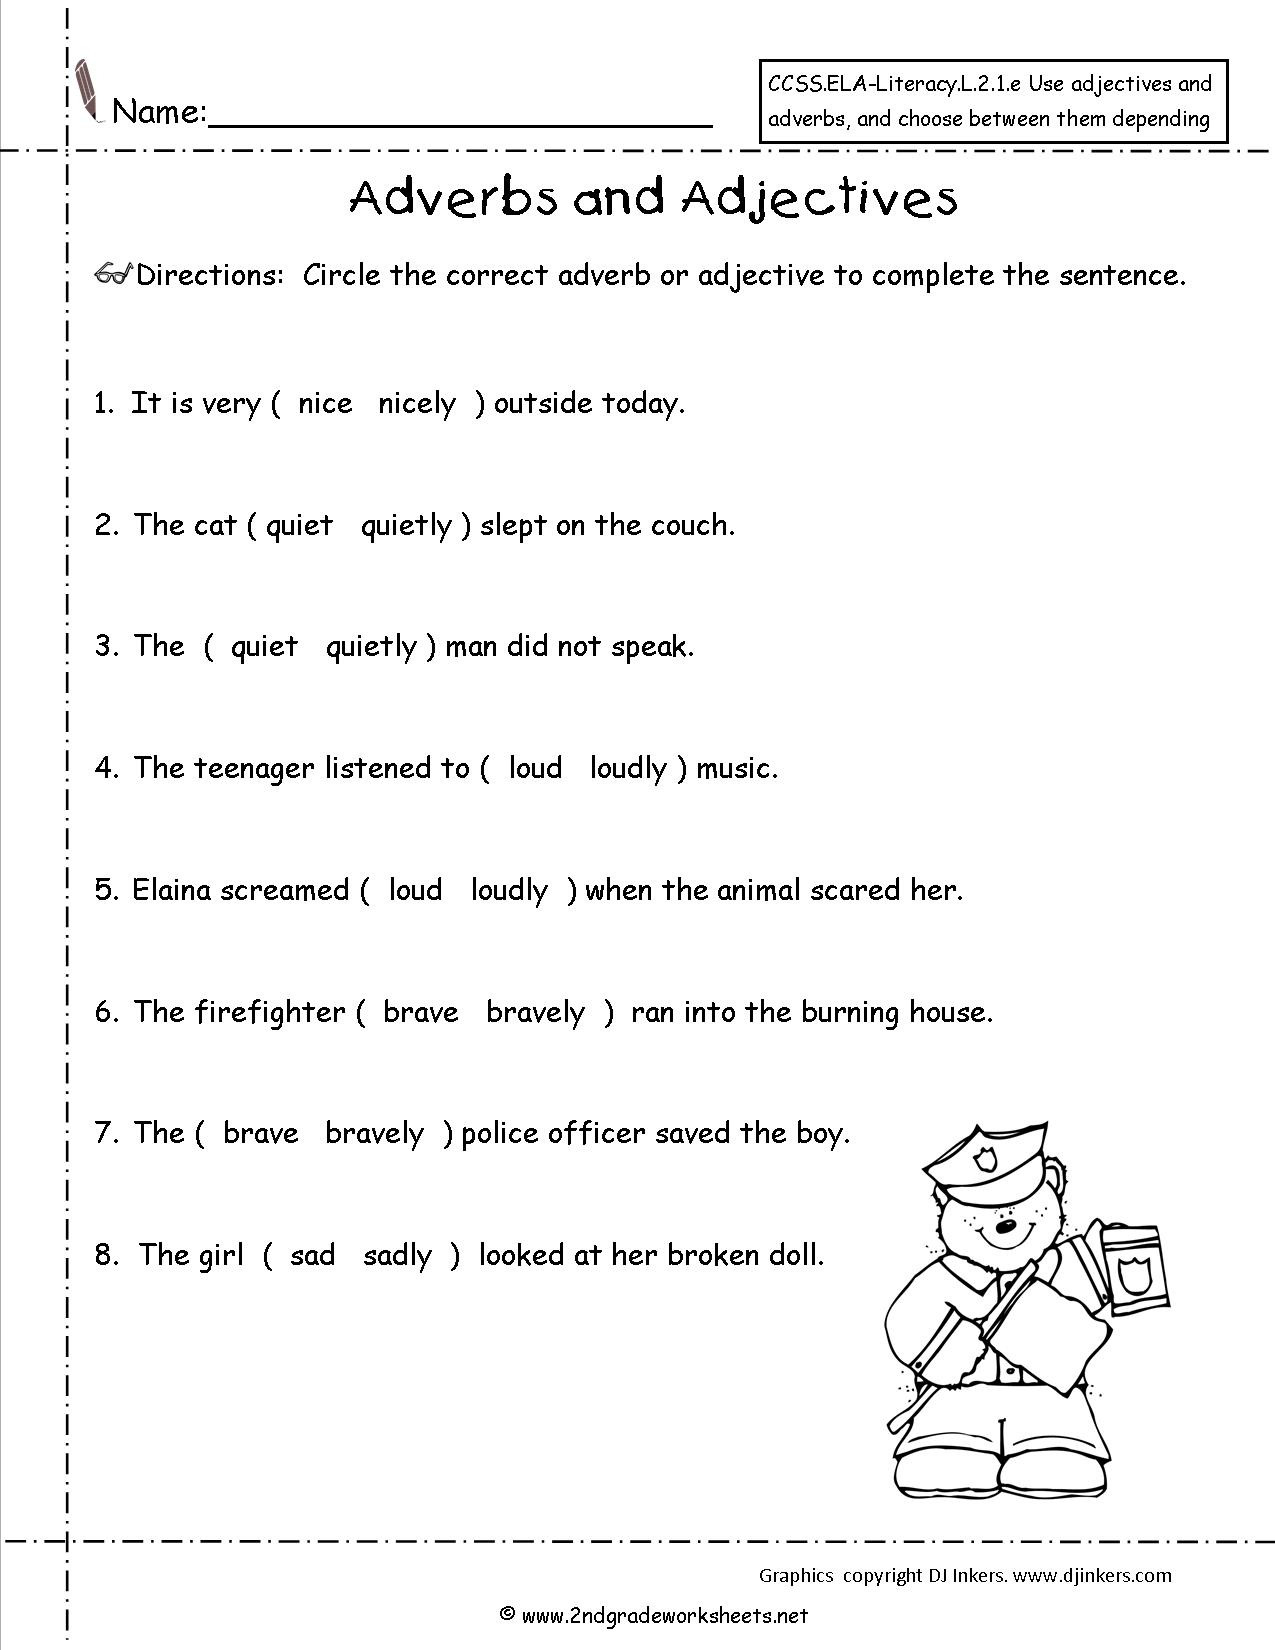 worksheets-on-adjectives-grade-2-i-english-key2practice-workbooks